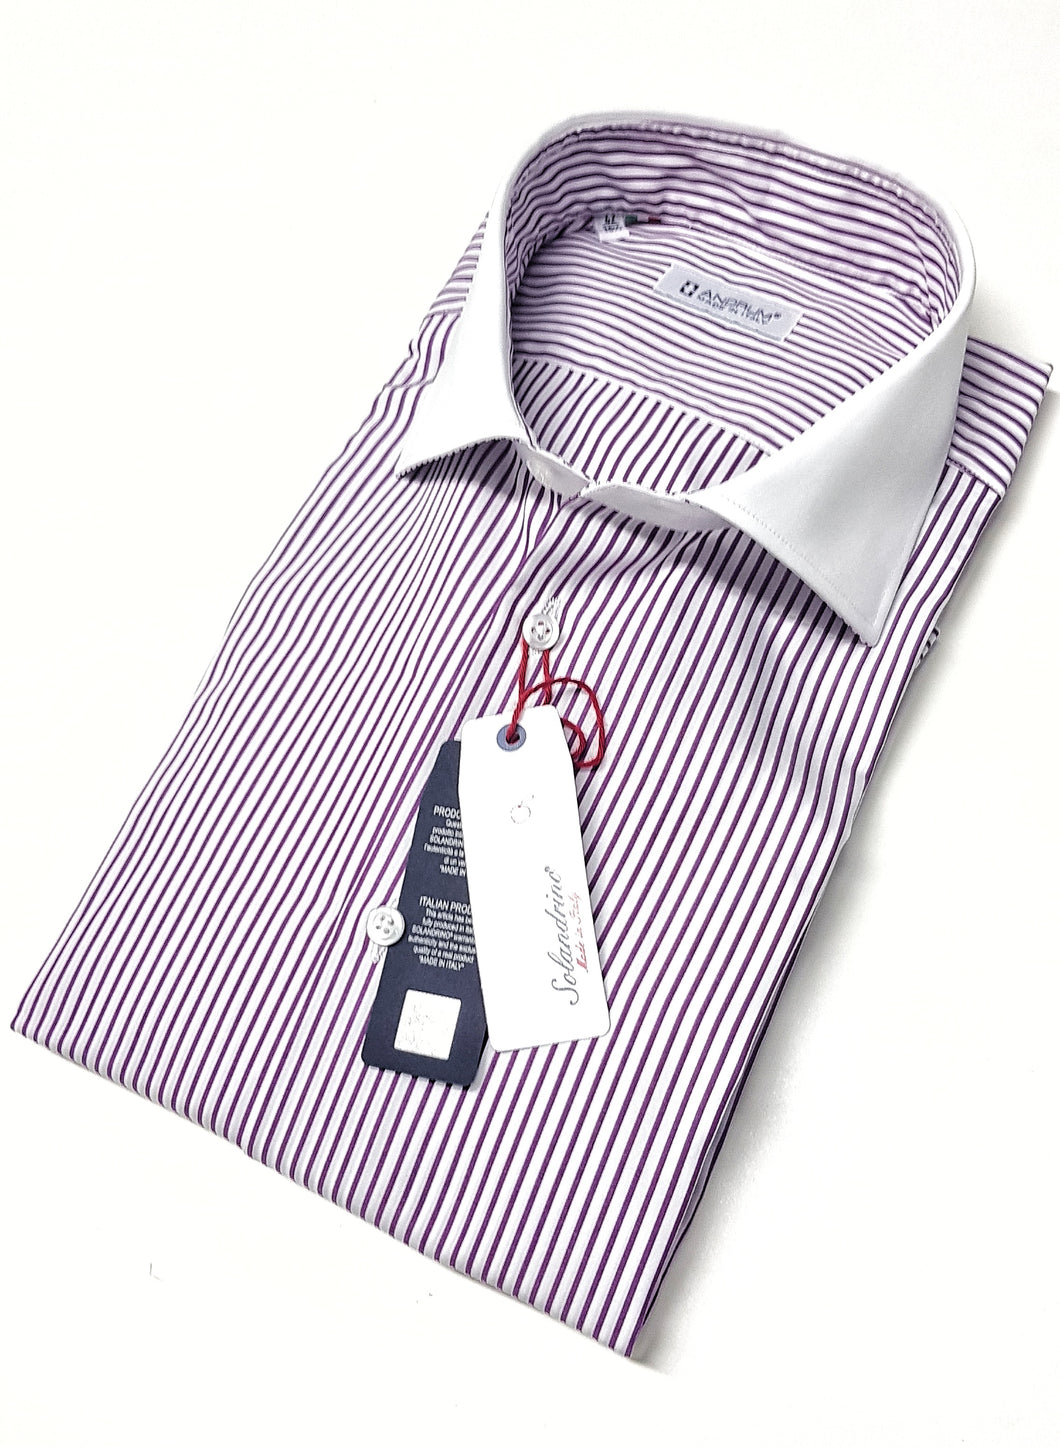 Camicia Club Man collo e polso bianco su rigato viola  bianco  made in Italy stripe shirt purple